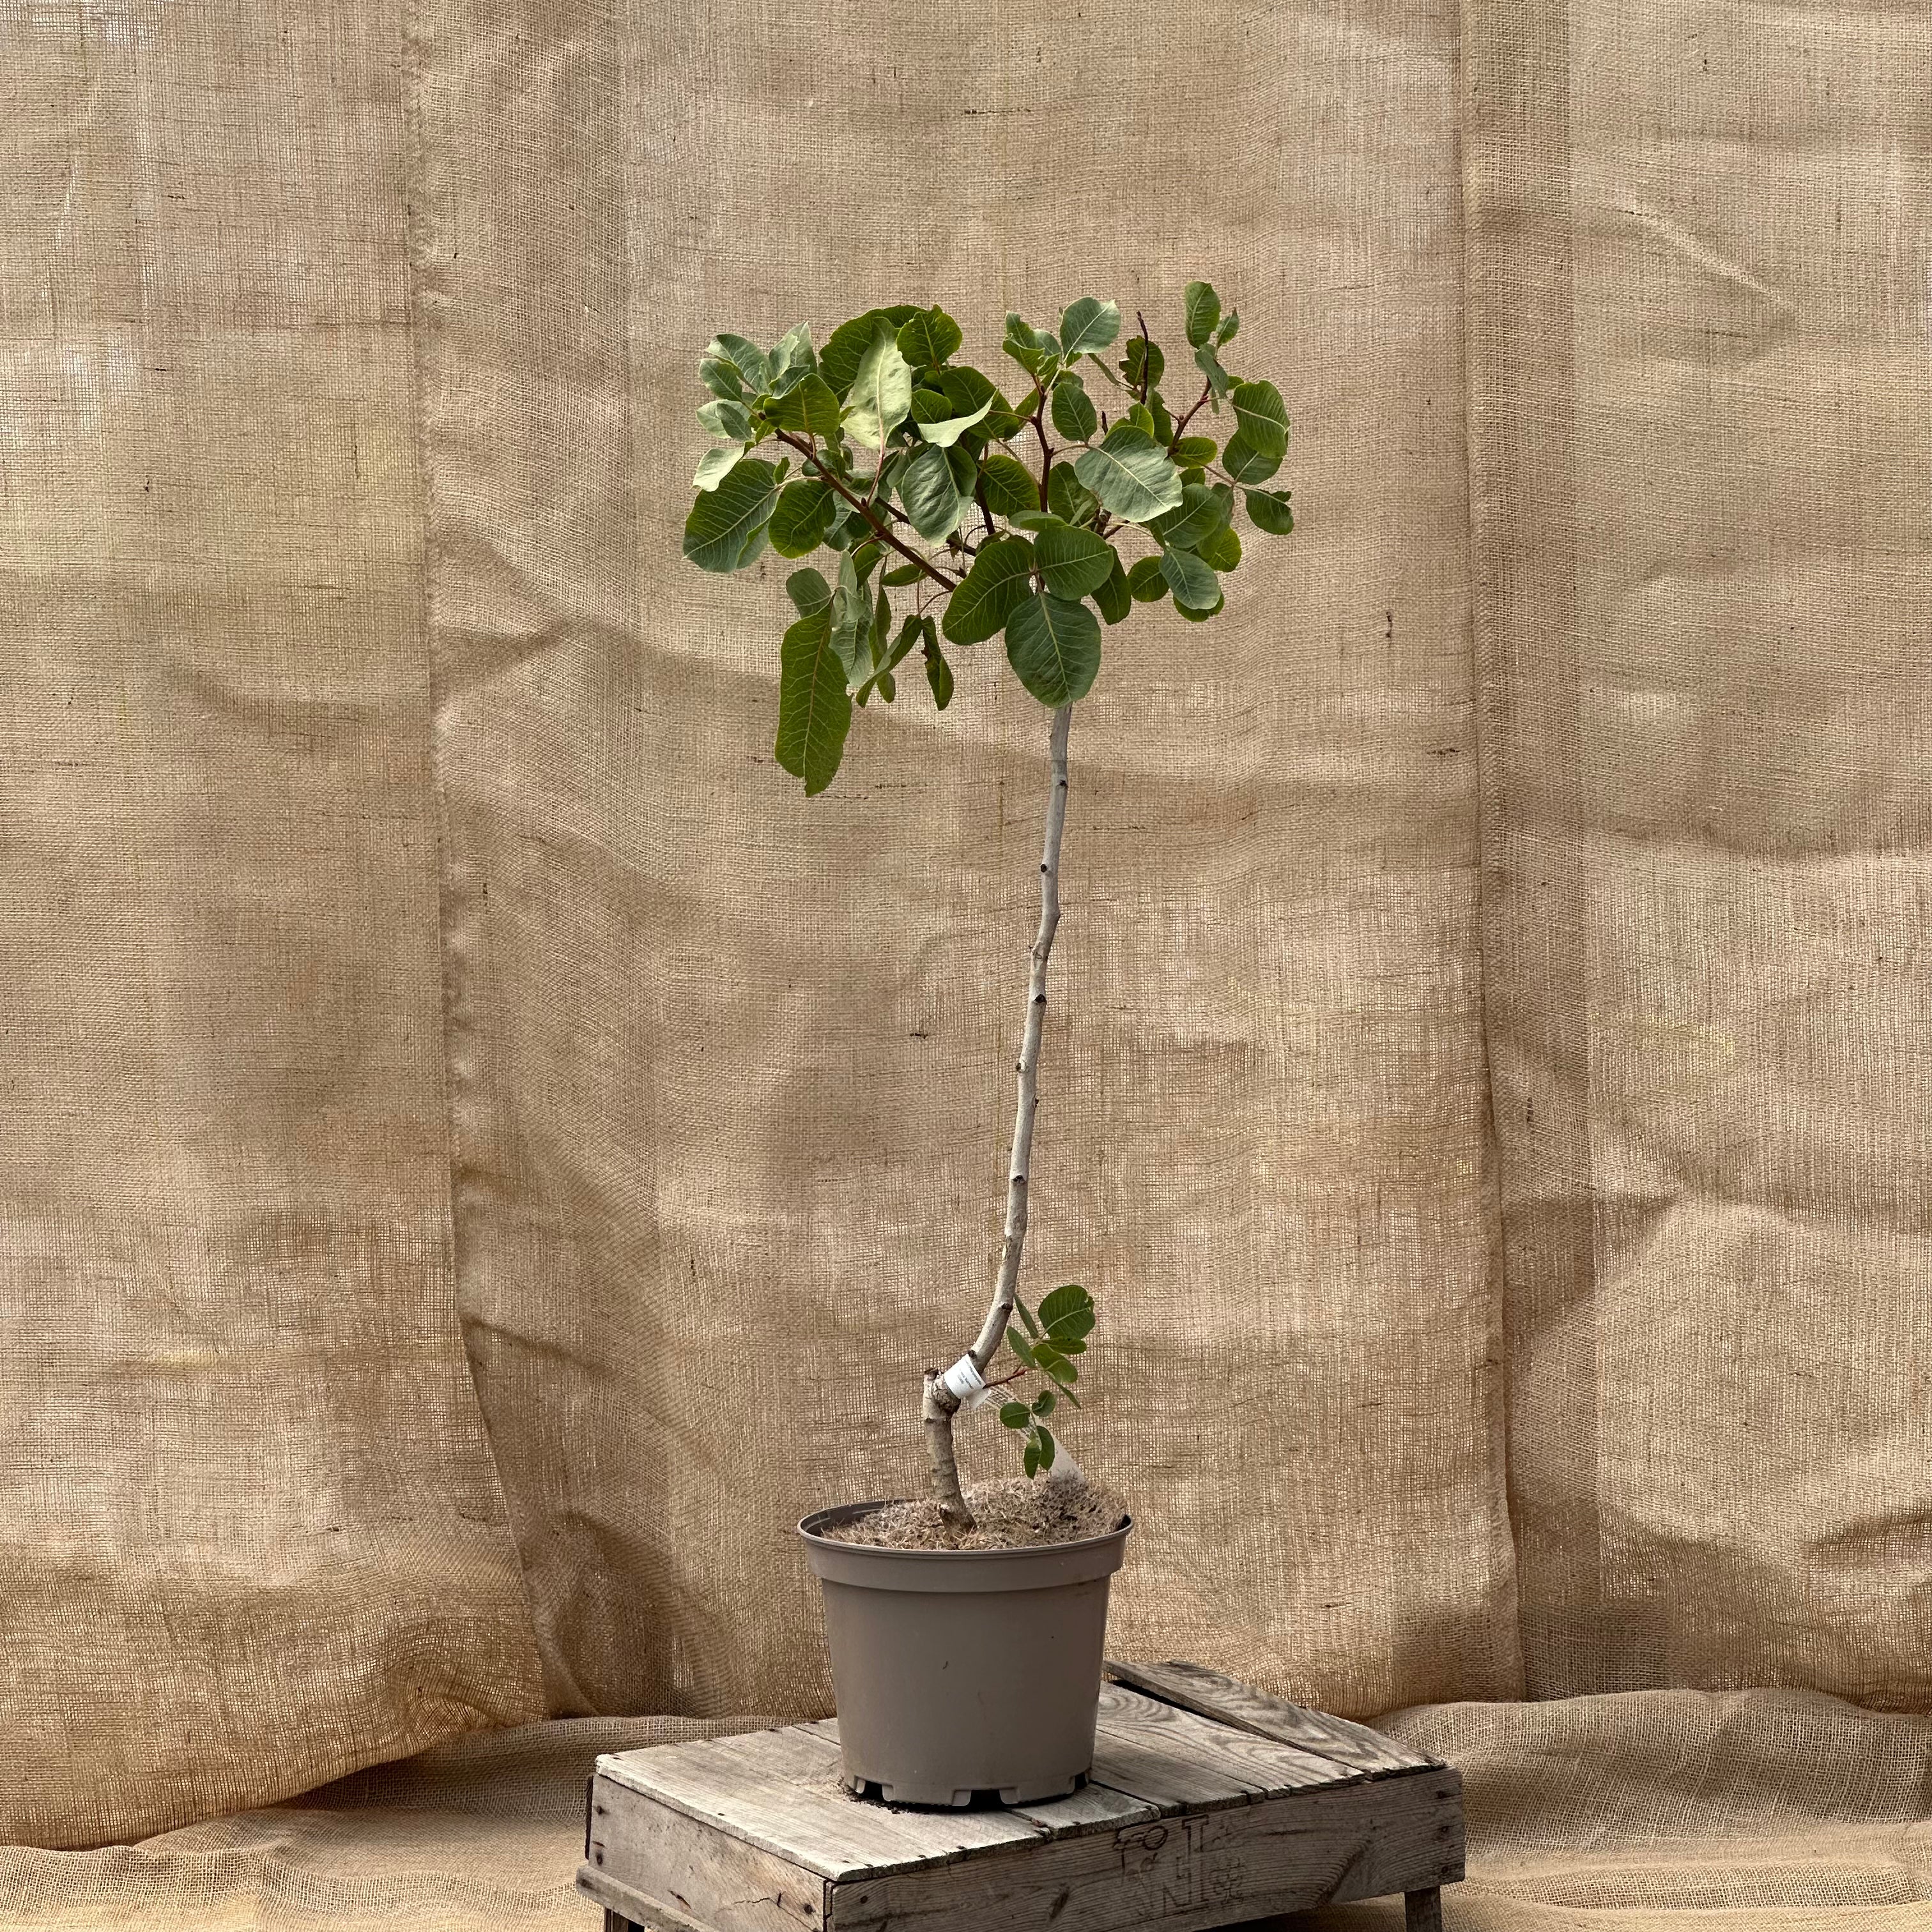 ackerbaum Pistazienbaum - Kerman kaufen